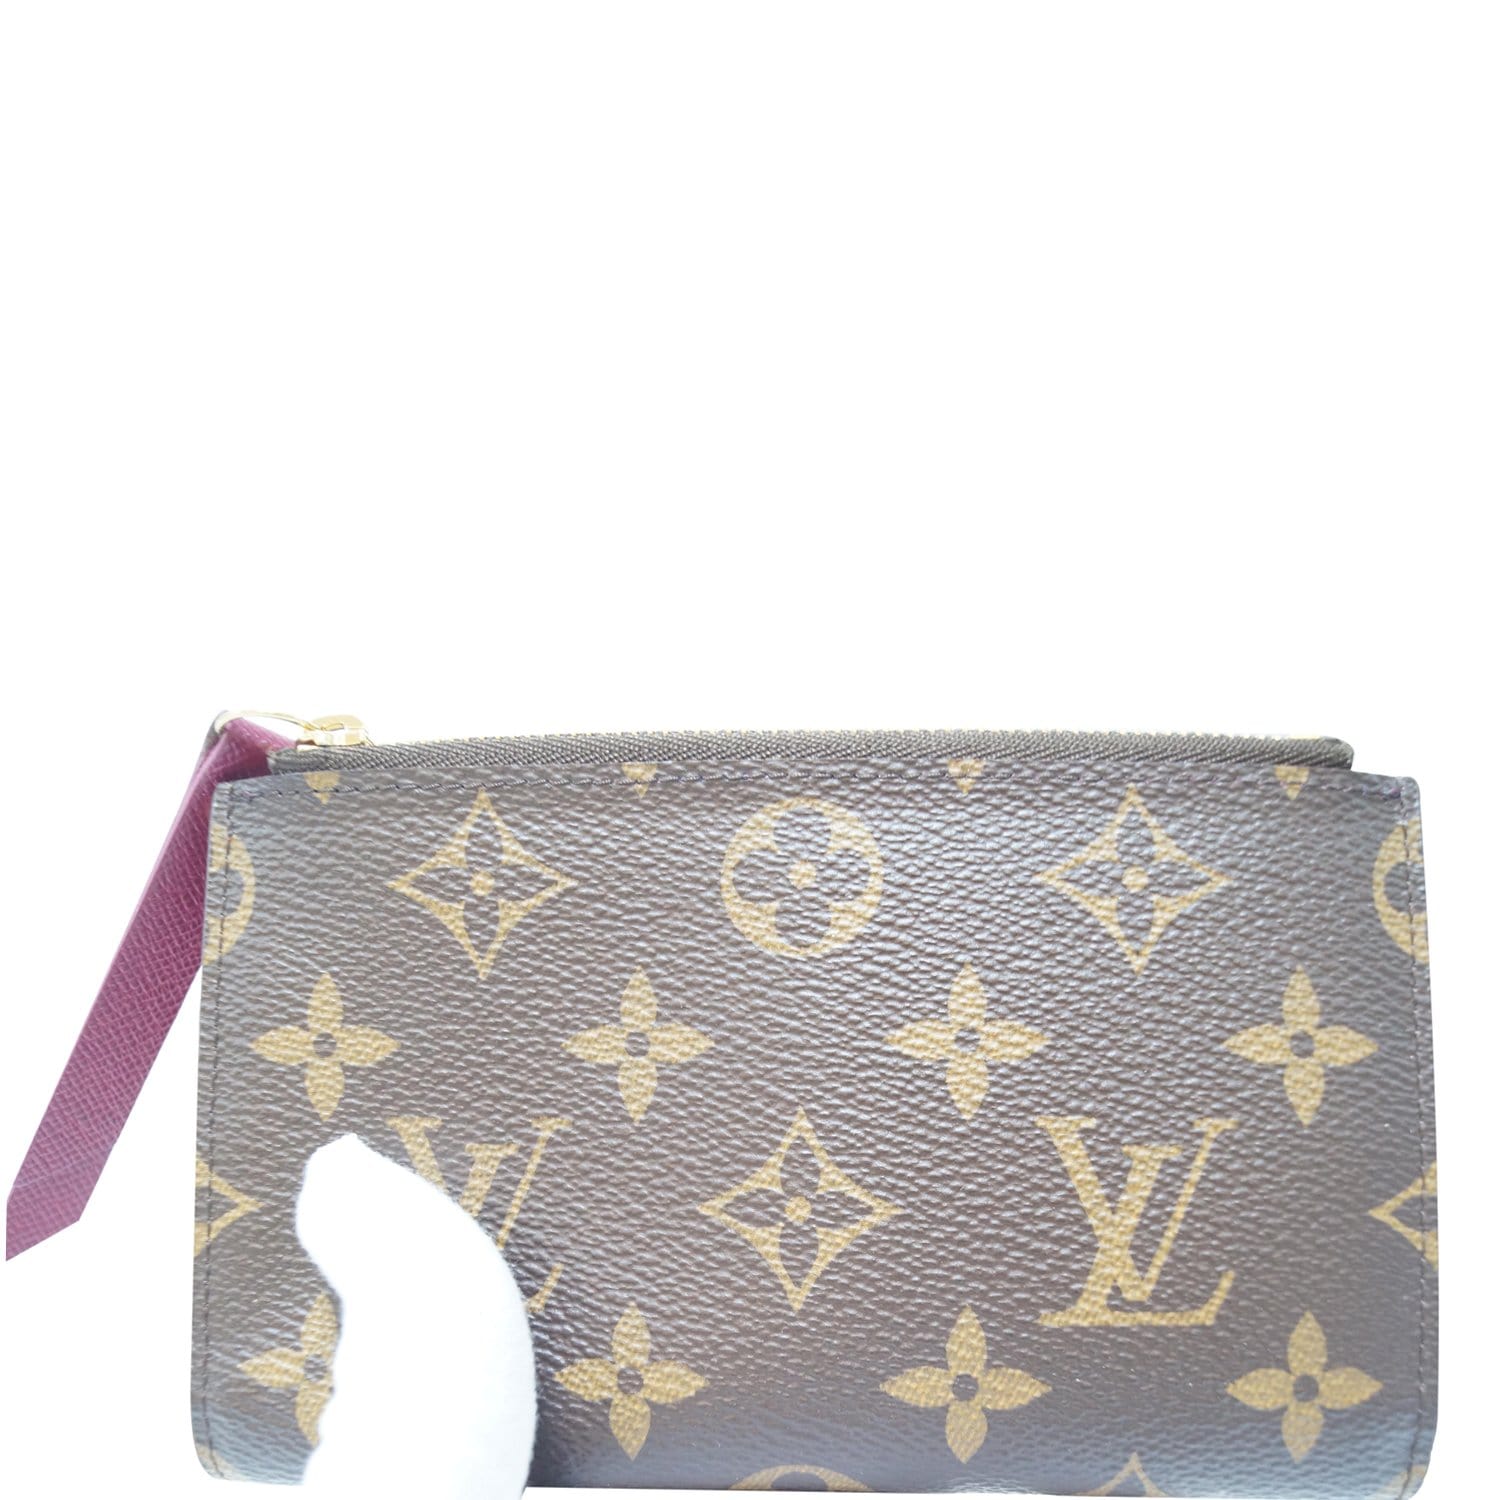 Louis Vuitton, Bags, Louis Vuitton Rare 25 Adele Compact Wallet